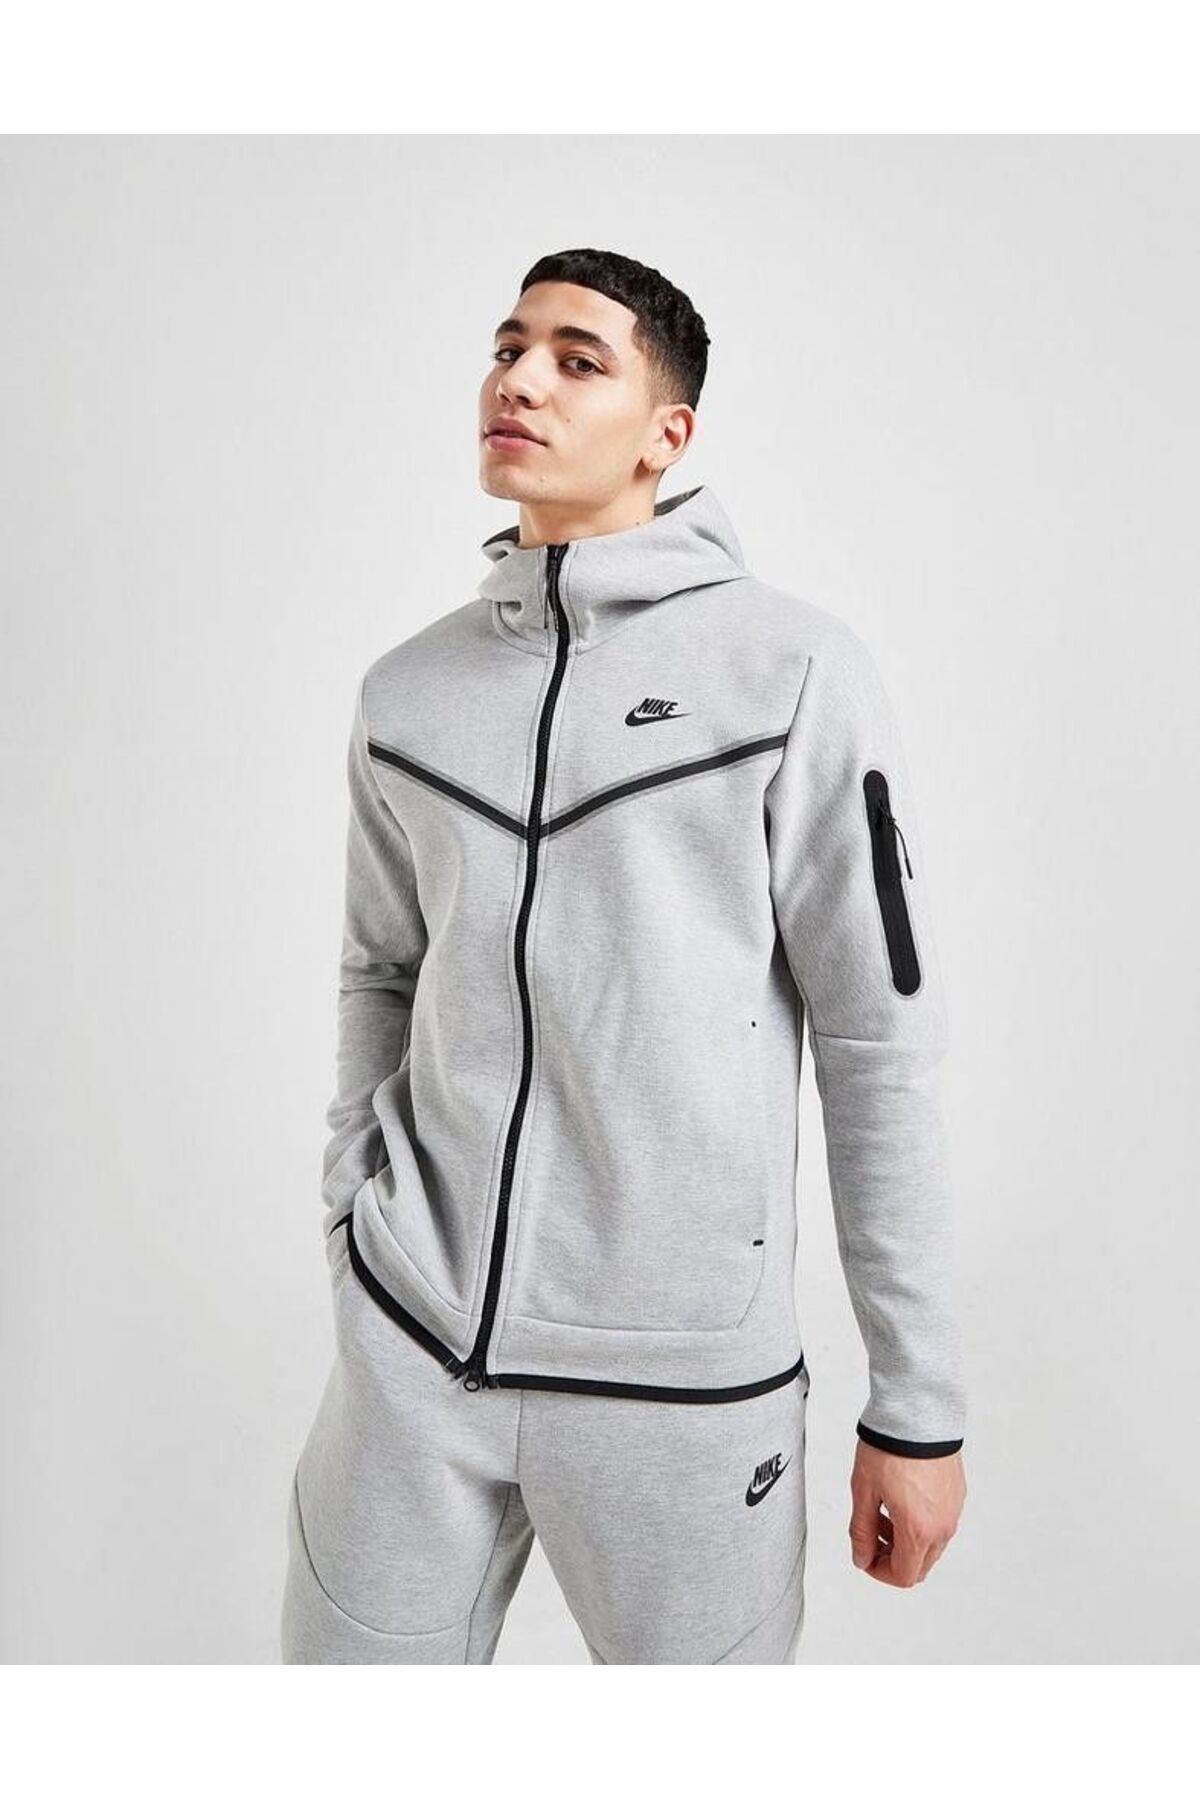 Nike Tech Fleece Men's Full Zip Hoodie NDD SPORT